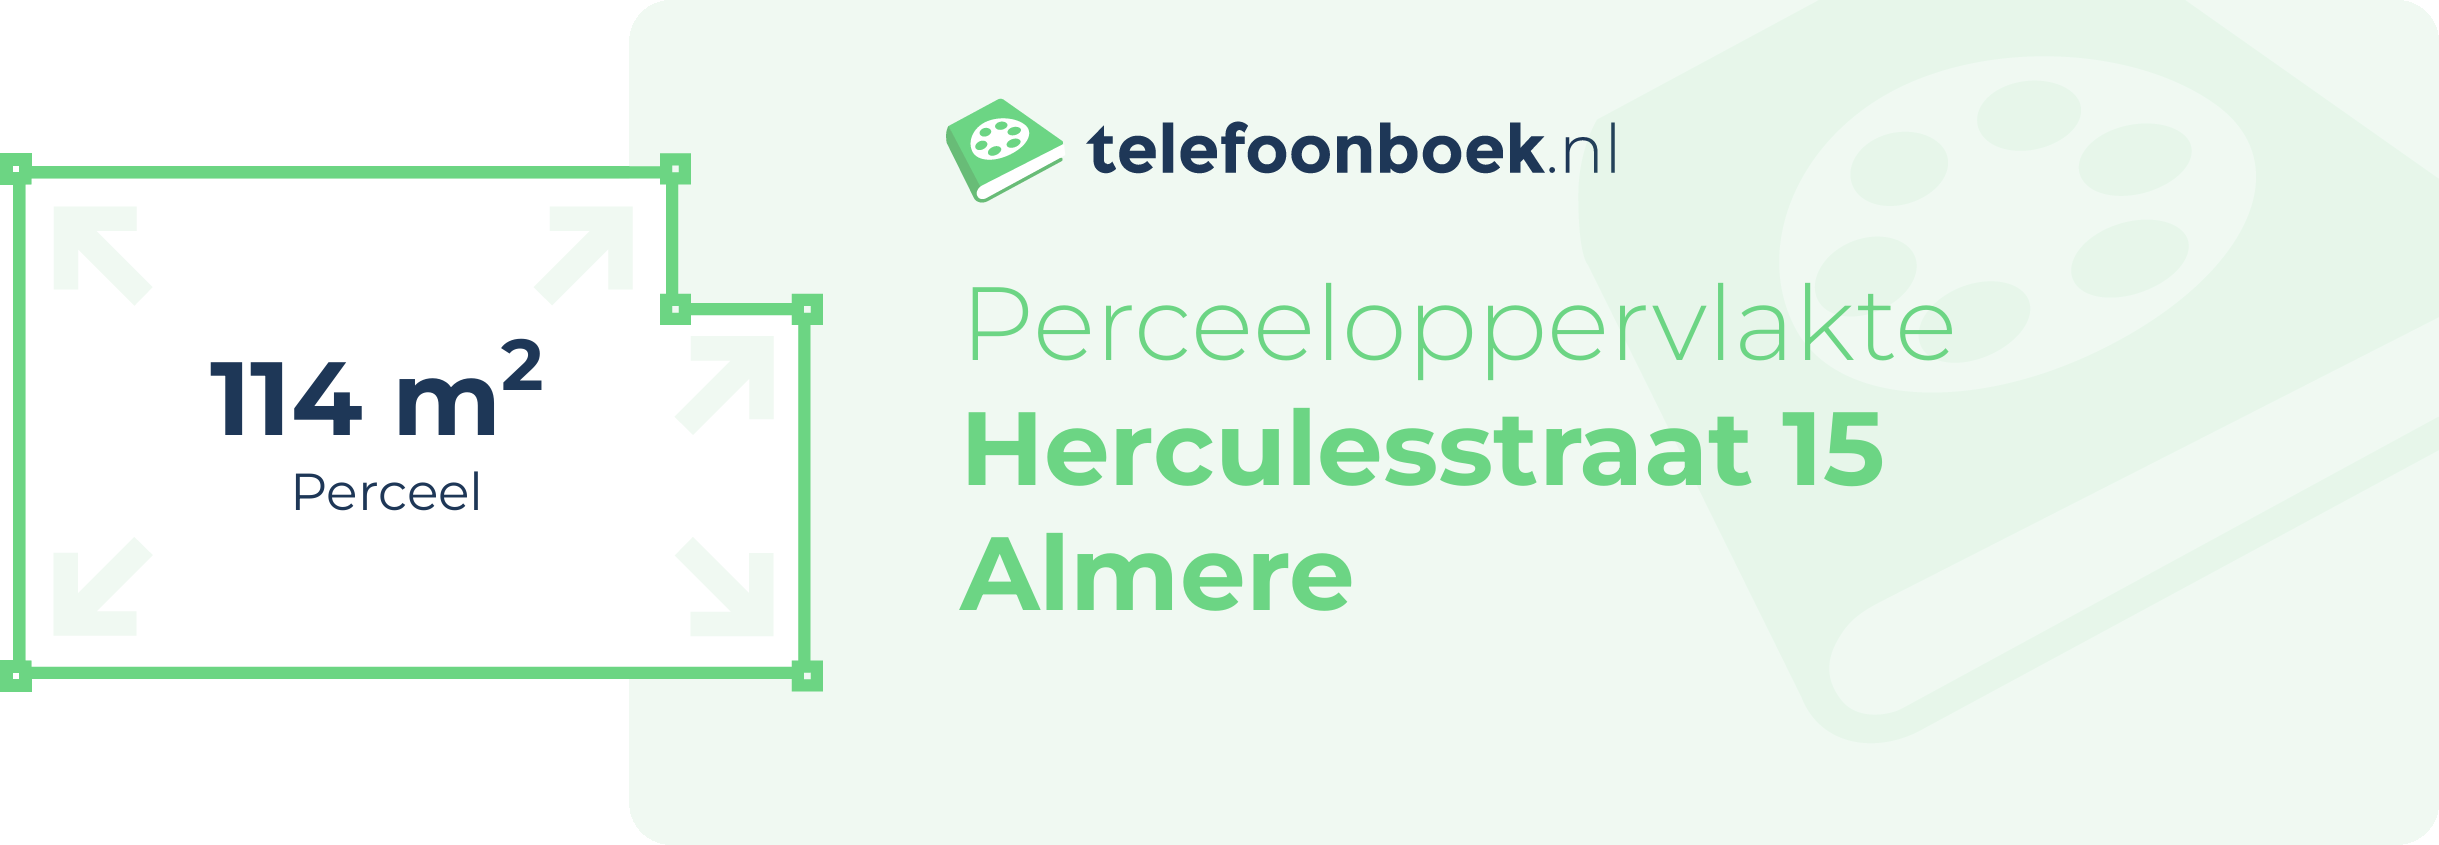 Perceeloppervlakte Herculesstraat 15 Almere